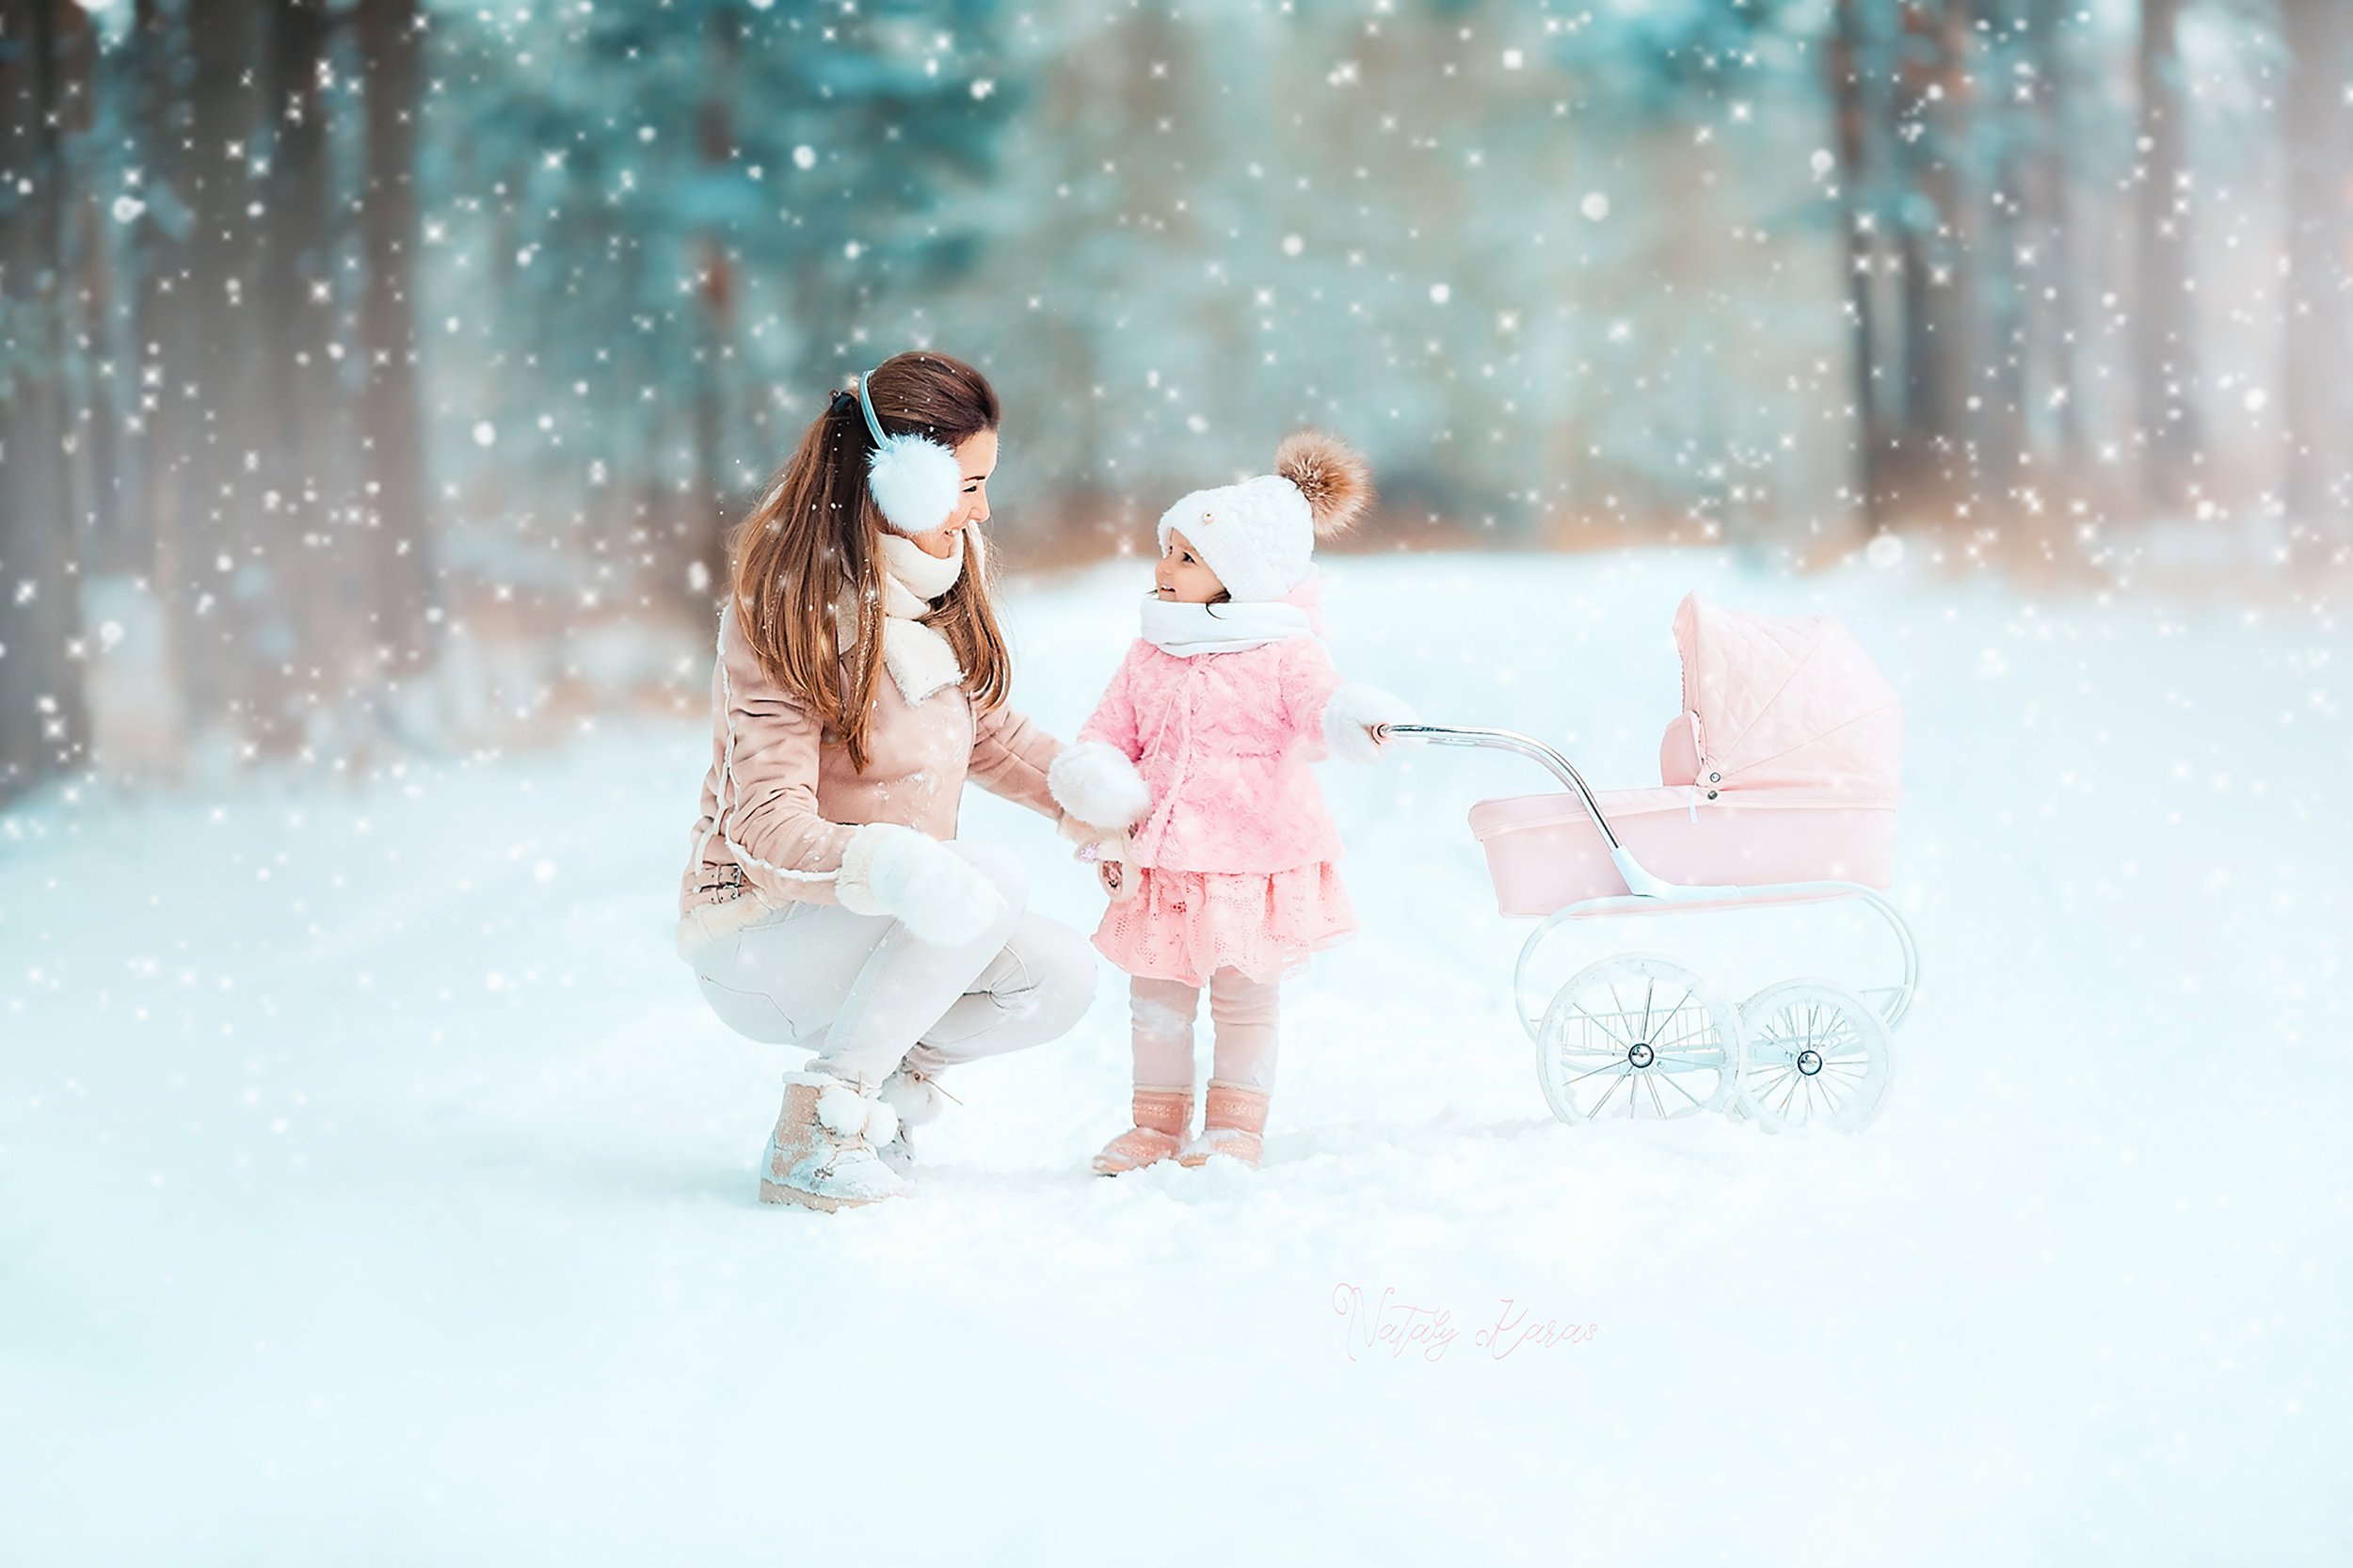 мама дочь зима снег прогулка лес любовь семья эмоции радость момент, Наталья Карась